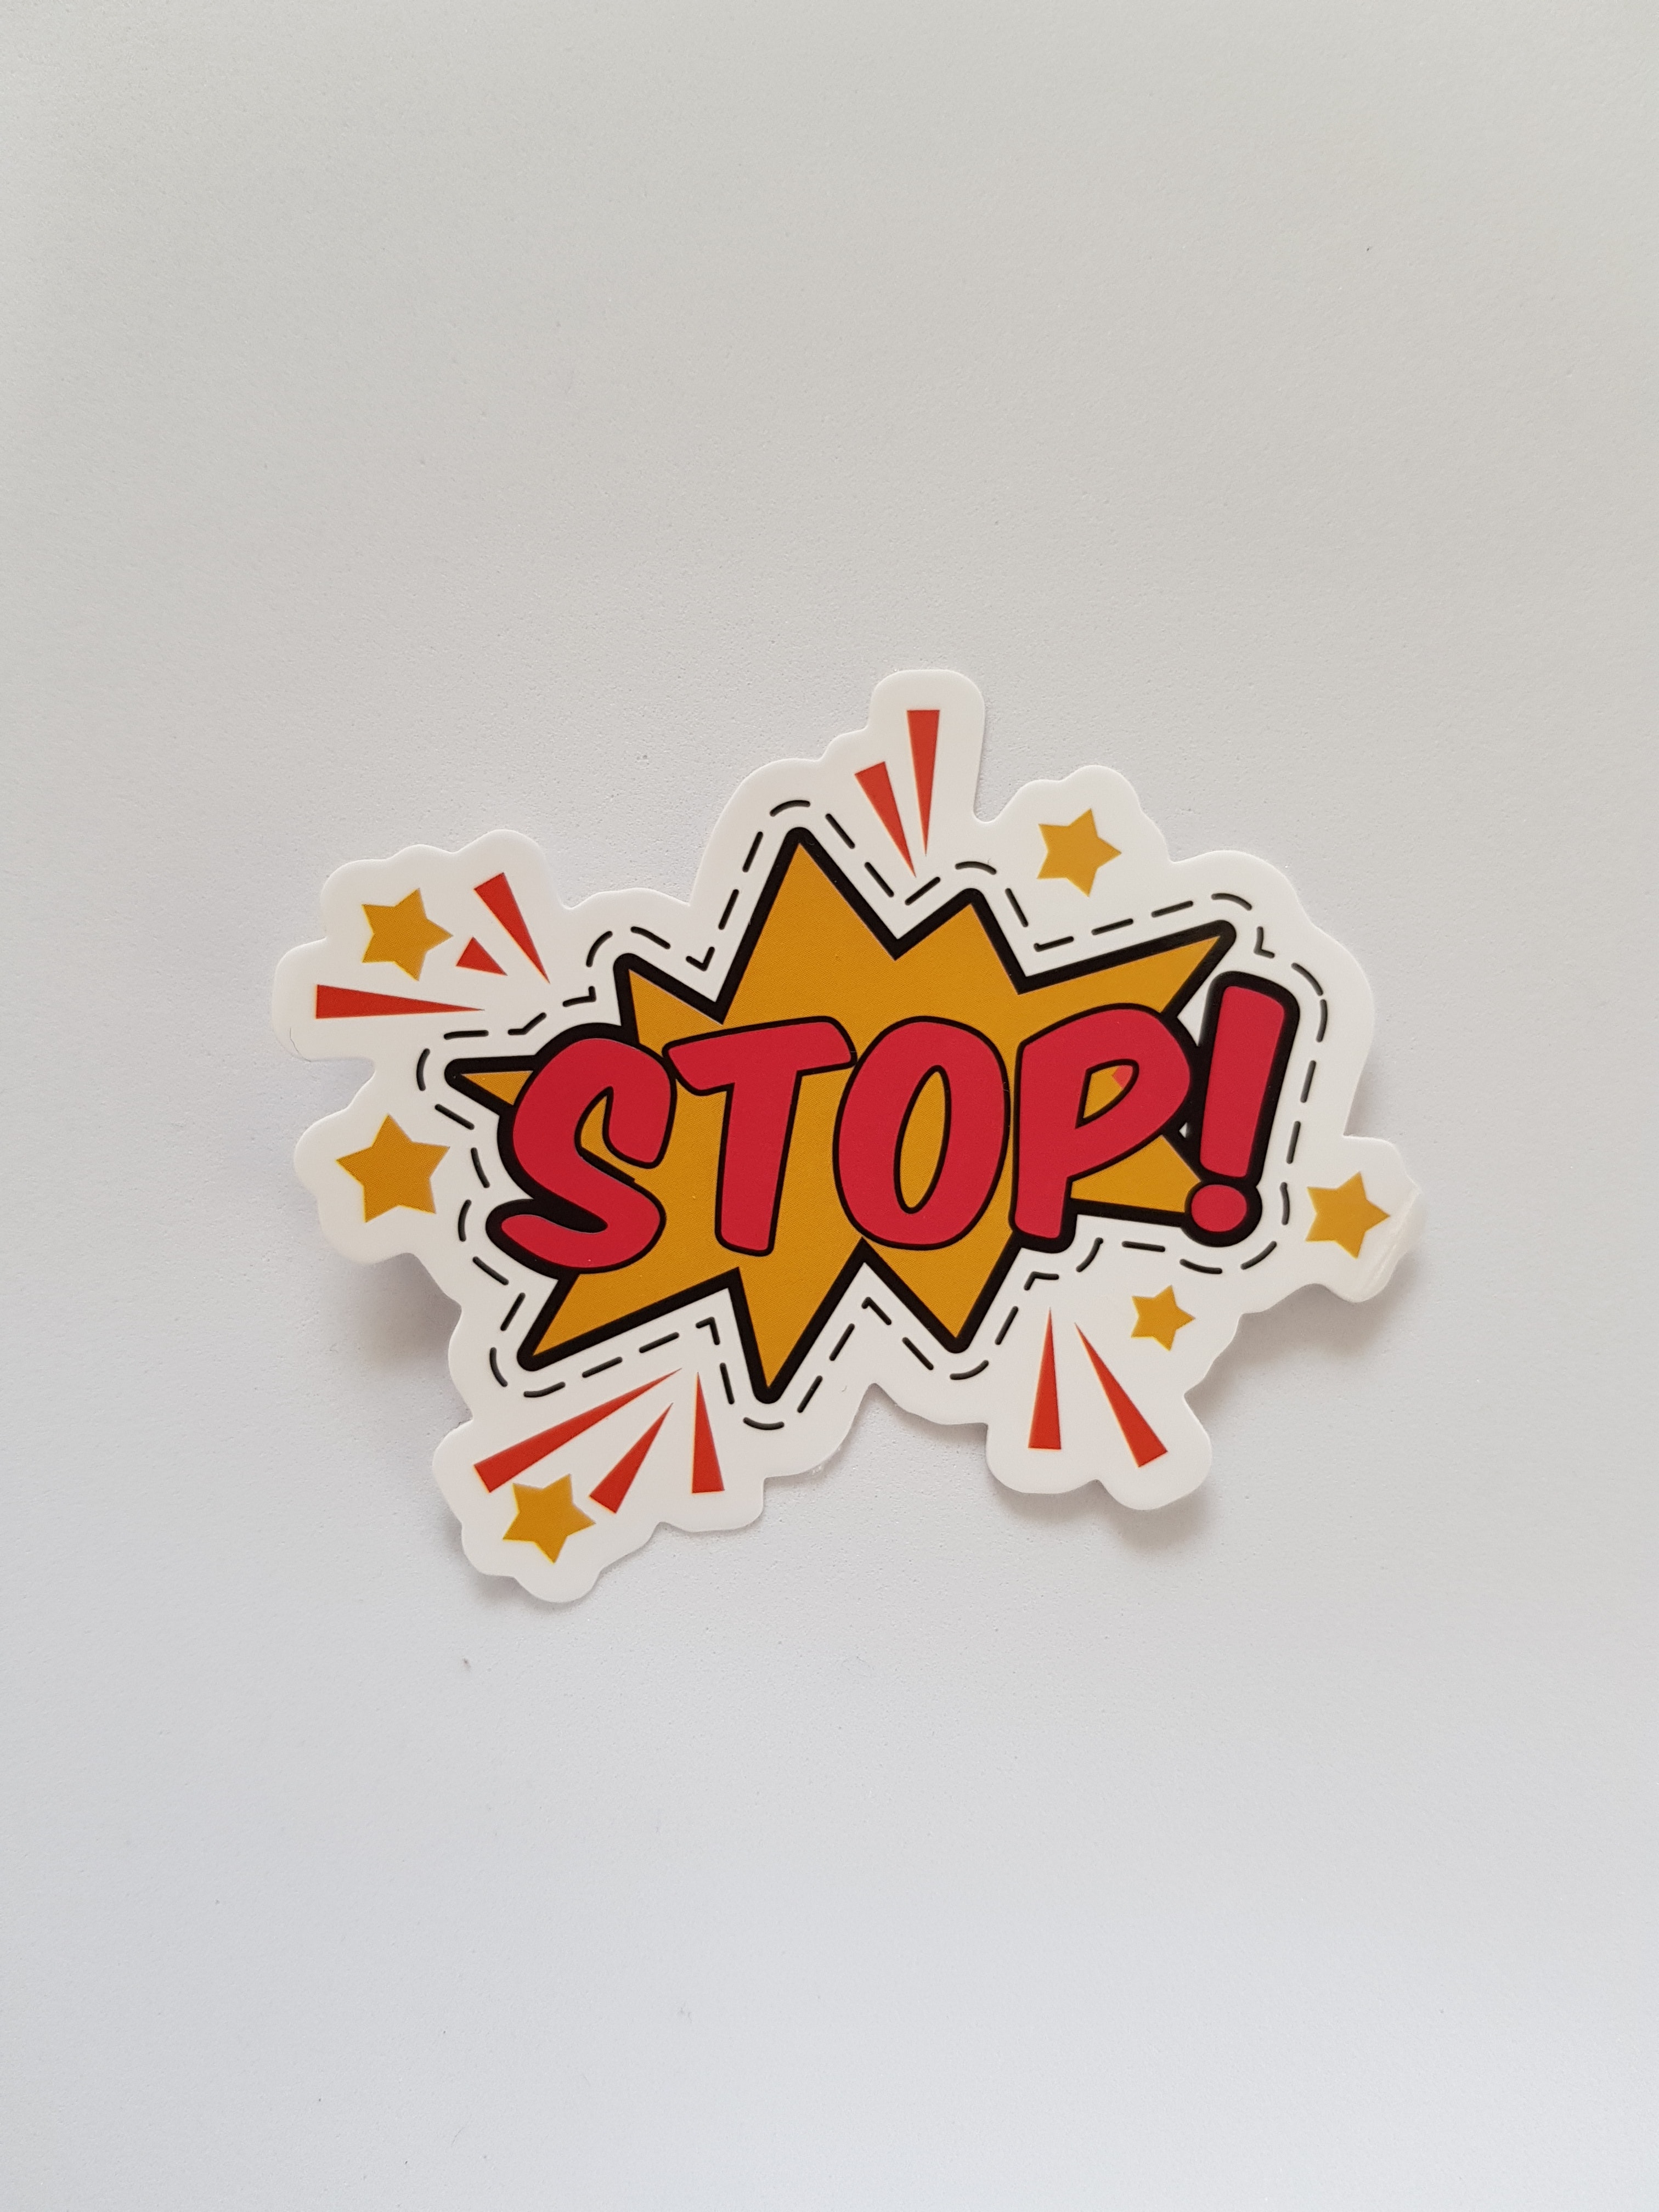 Foto von einem knalligen orange-gelb-farbenen Papierschild auf dem in roter Schrift "Stop!" steht. 